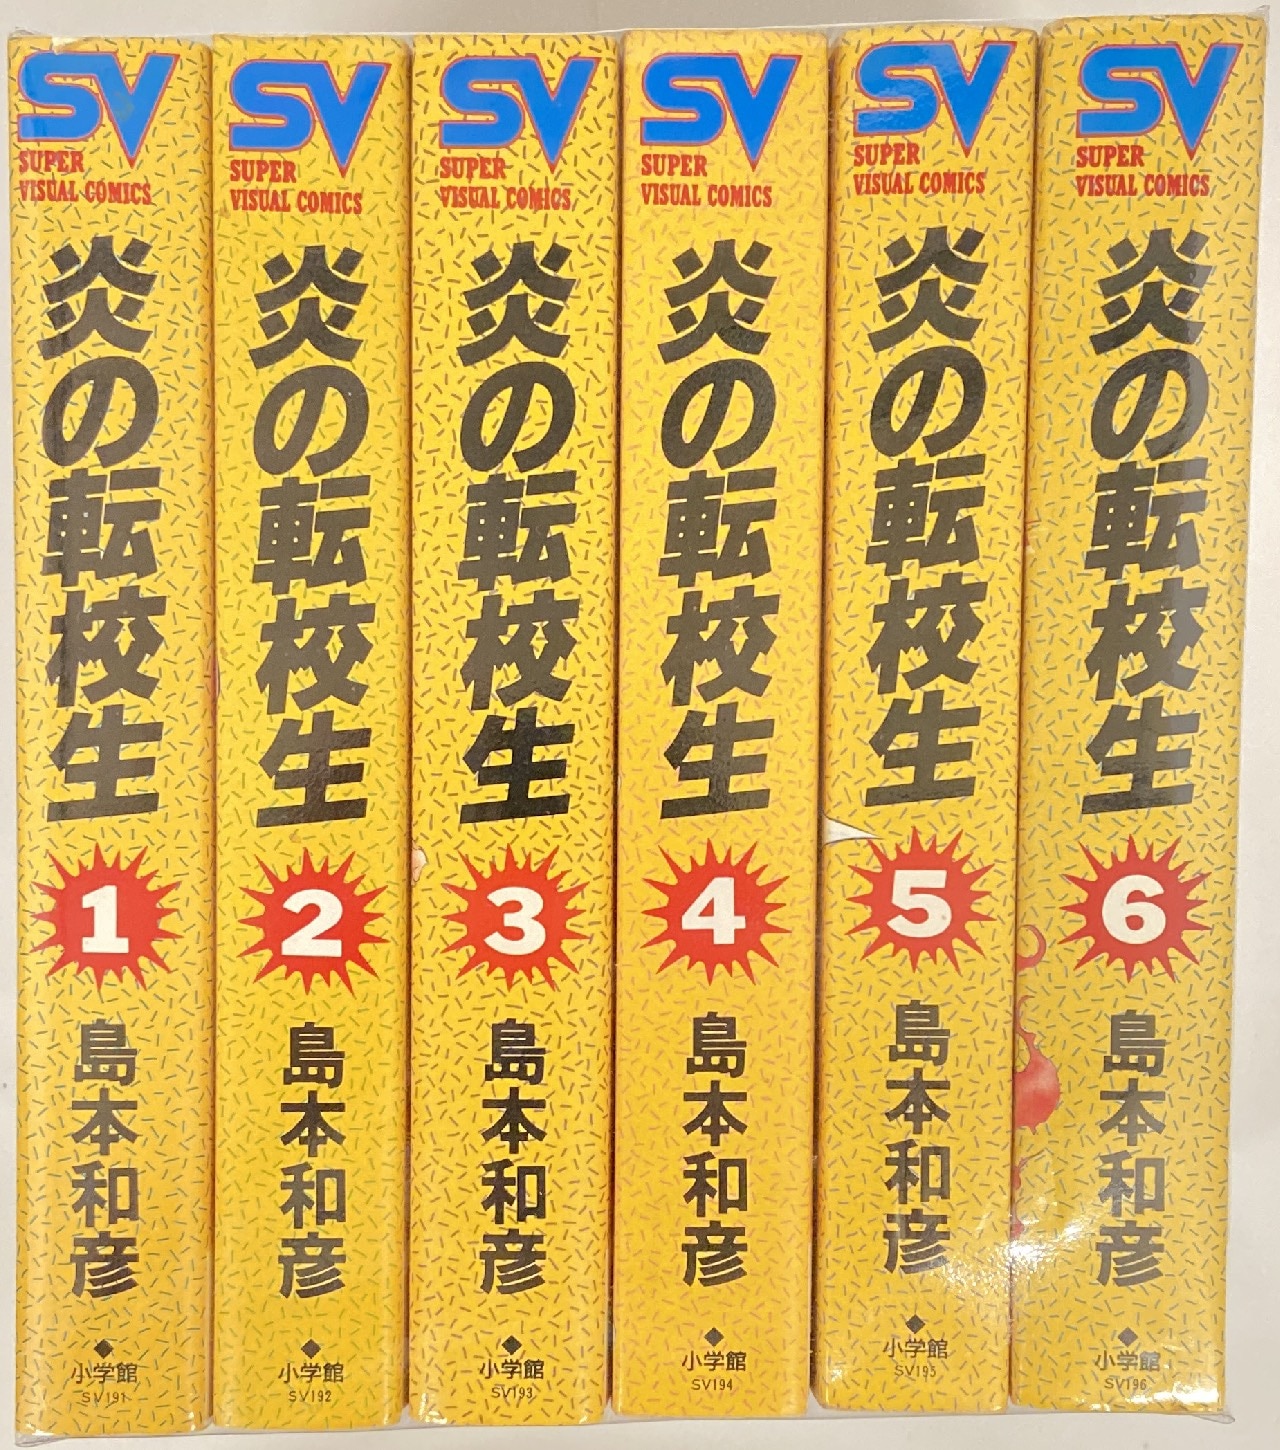 小学館 スーパービジュアルコミックス 島本和彦 炎の転校生 ワイド版